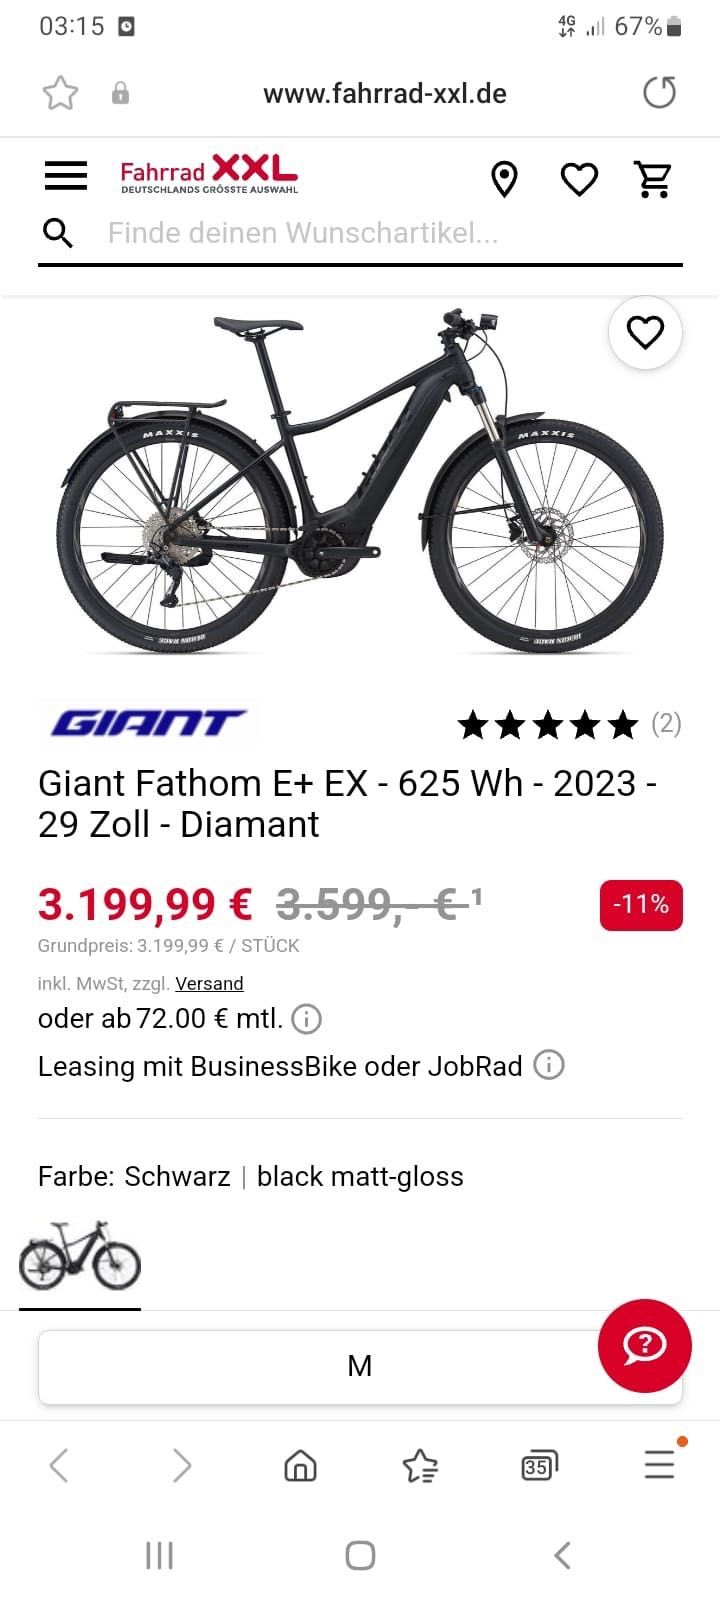 Giant Fathom E+ EX - 625 Wh - 2023 -
29